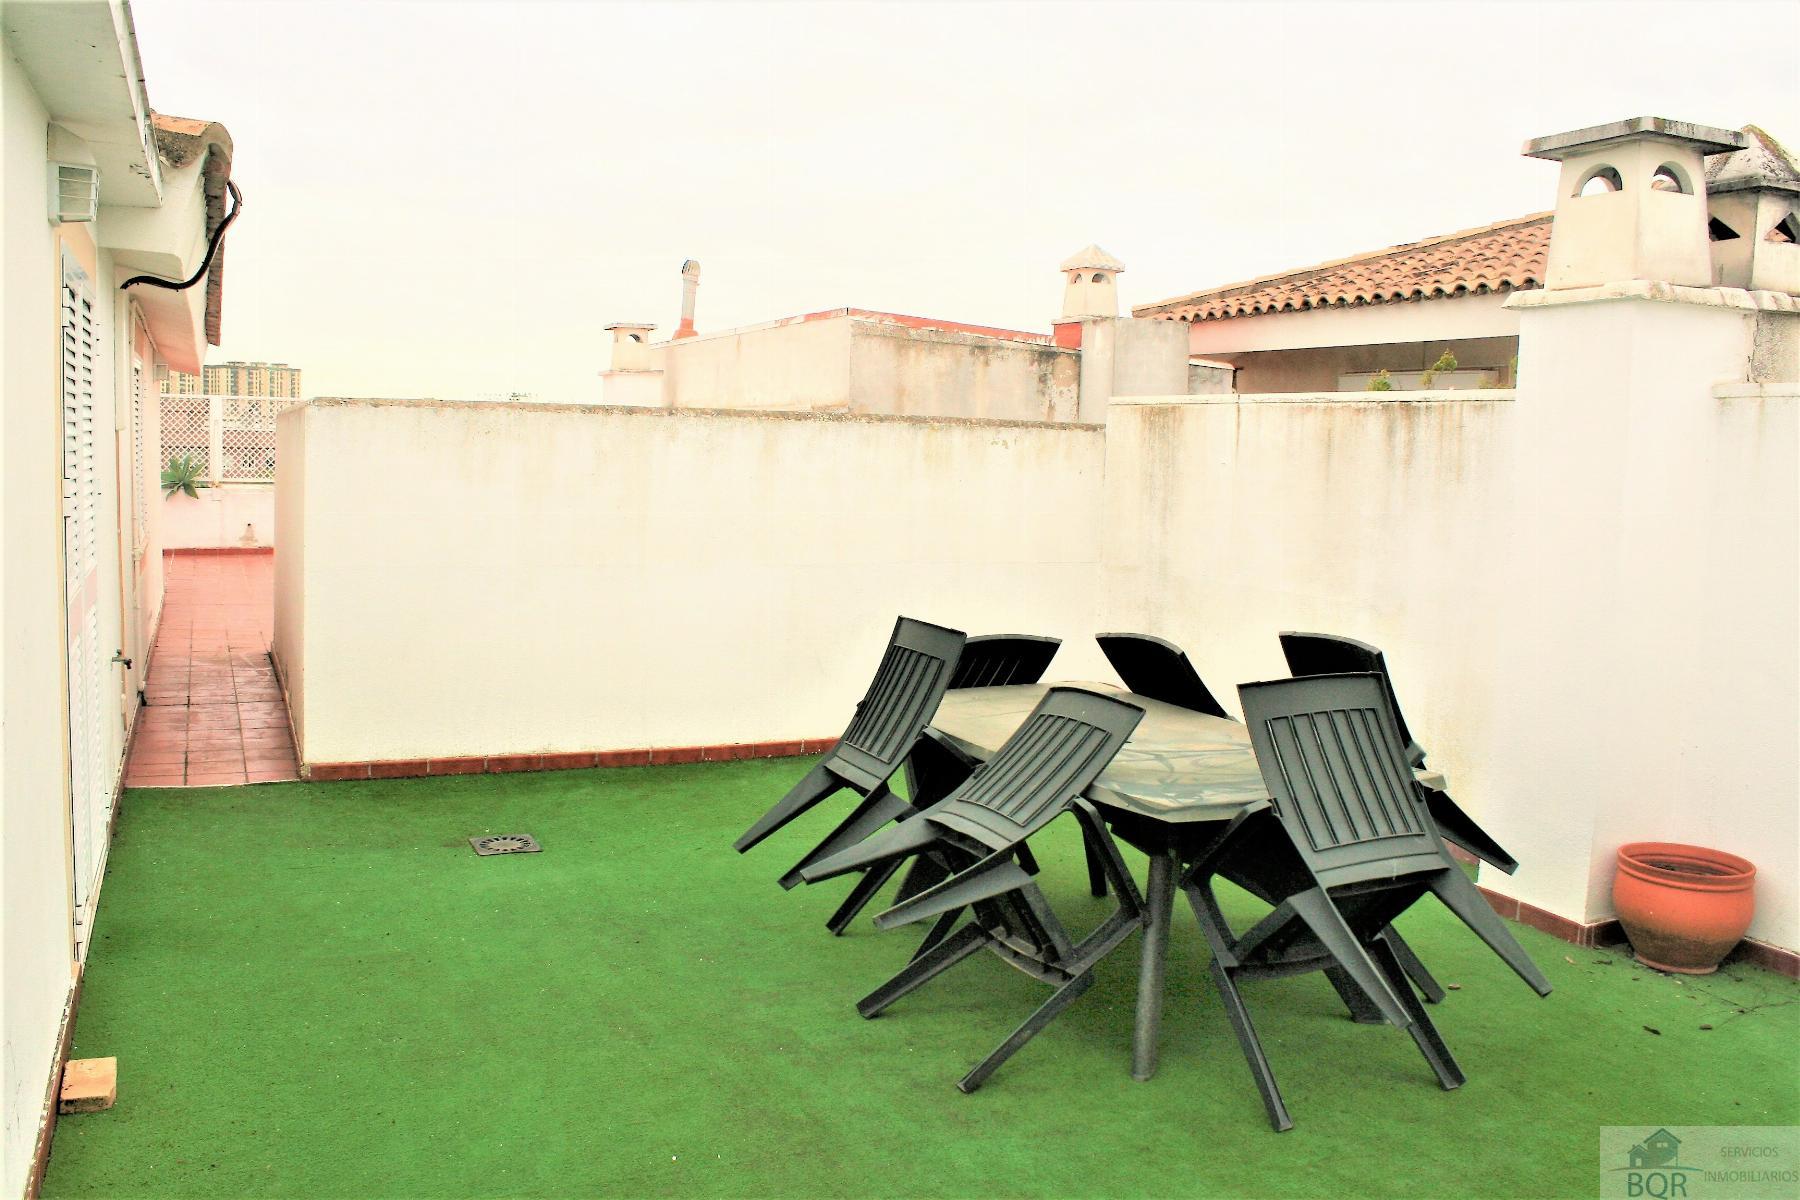 Verkoop van penthouse in Jerez de la Frontera